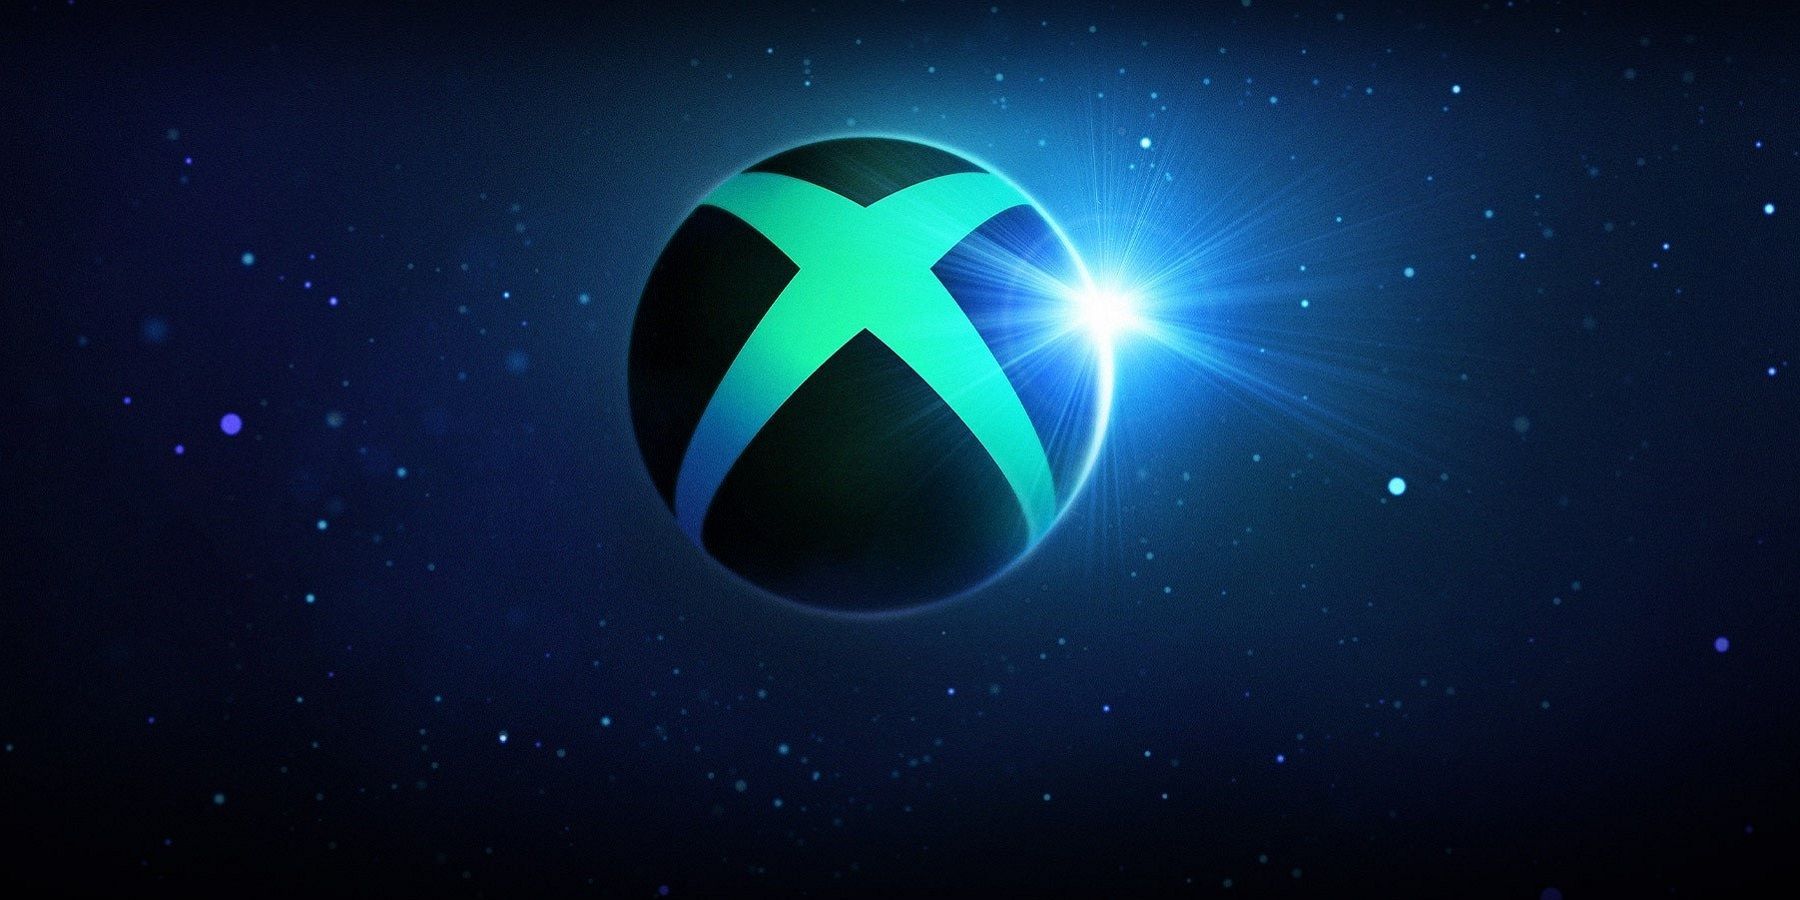 Xbox Exec Teases 'Fun Week' Amid Game Showcase Rumors [UPDATE]